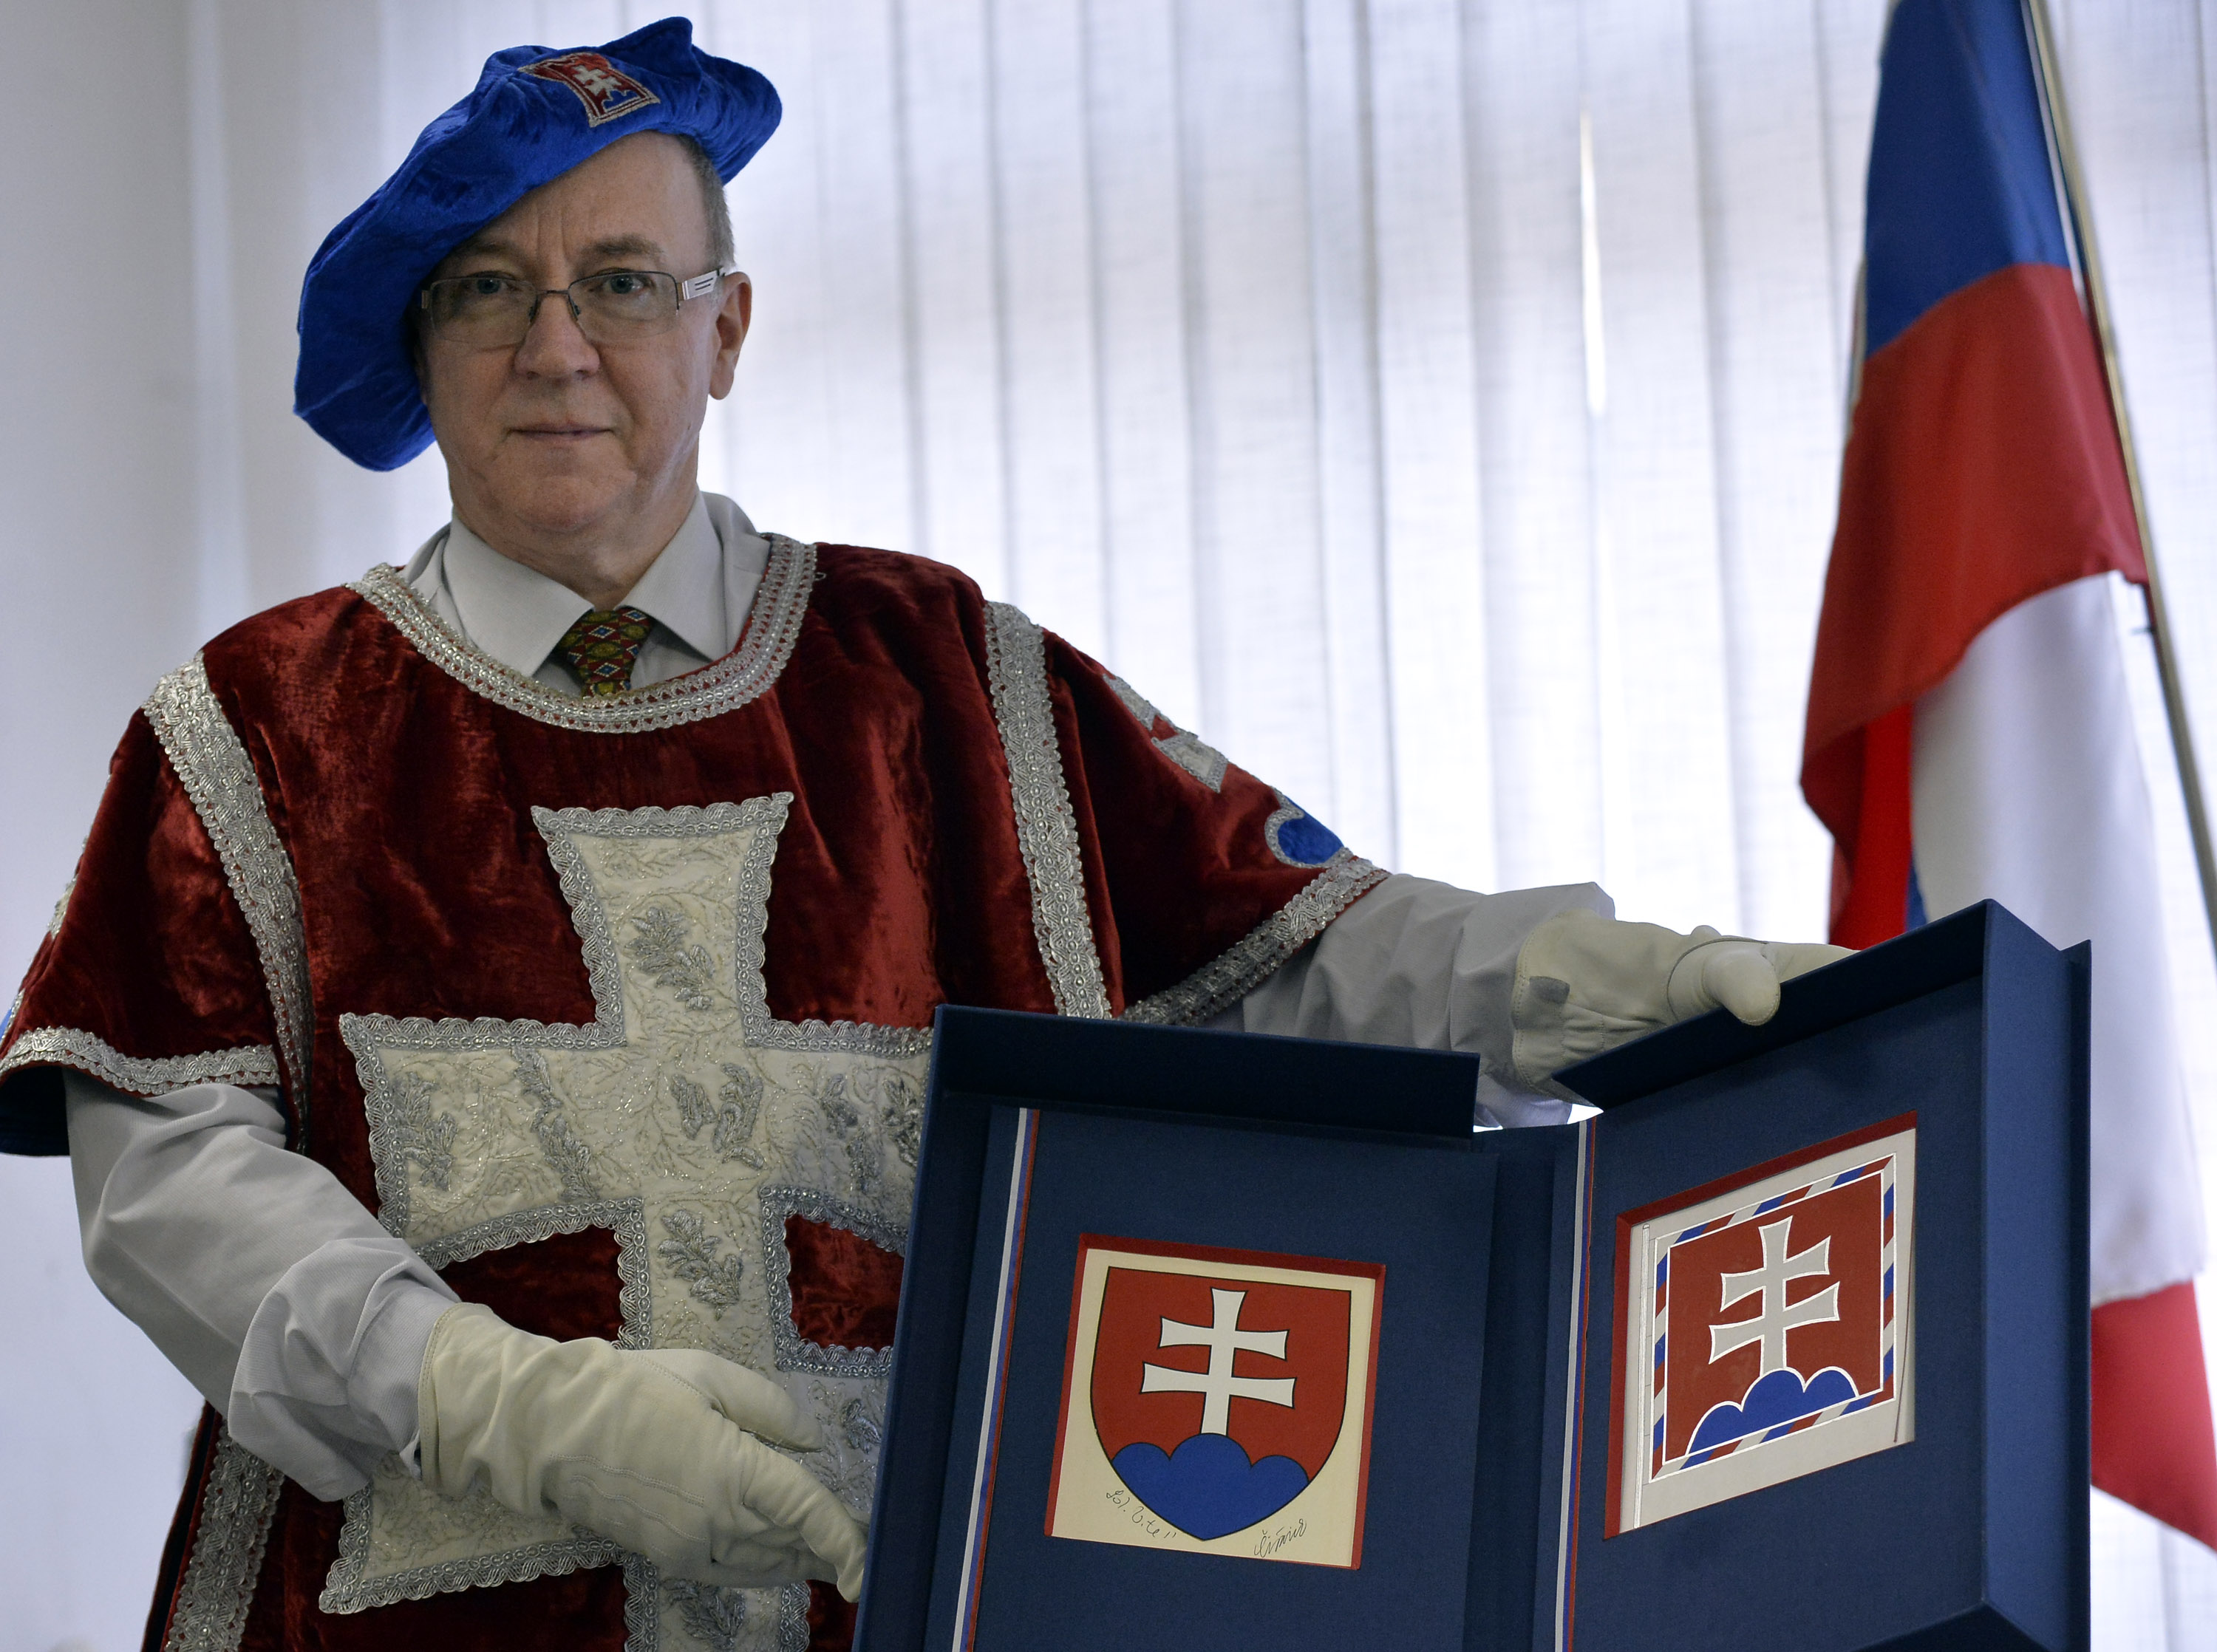 Hlavný štátny radca pre heraldiku MV SR Ladislav Vrtel s orginálmi štátneho znaku